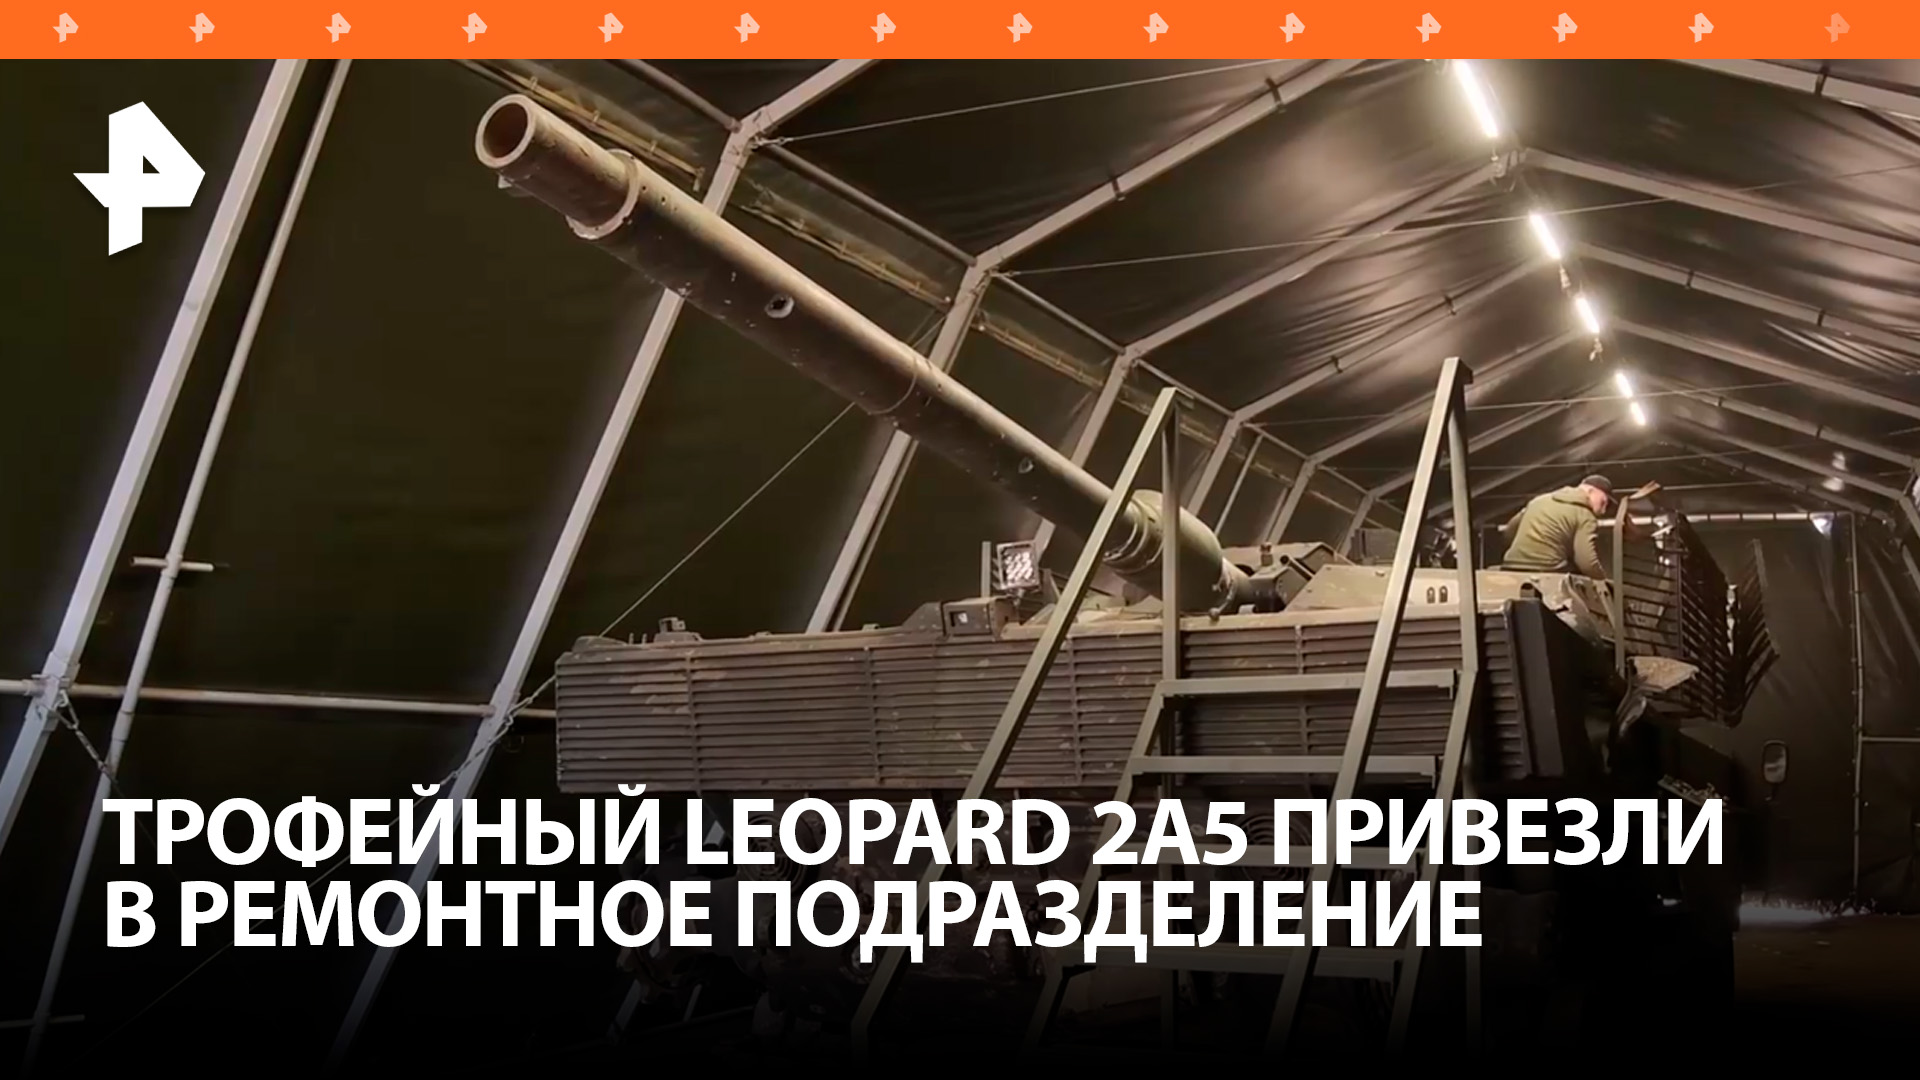 Трофейный Leopard привезли в ремонтное подразделение группировки войск "Центр" / РЕН Новости